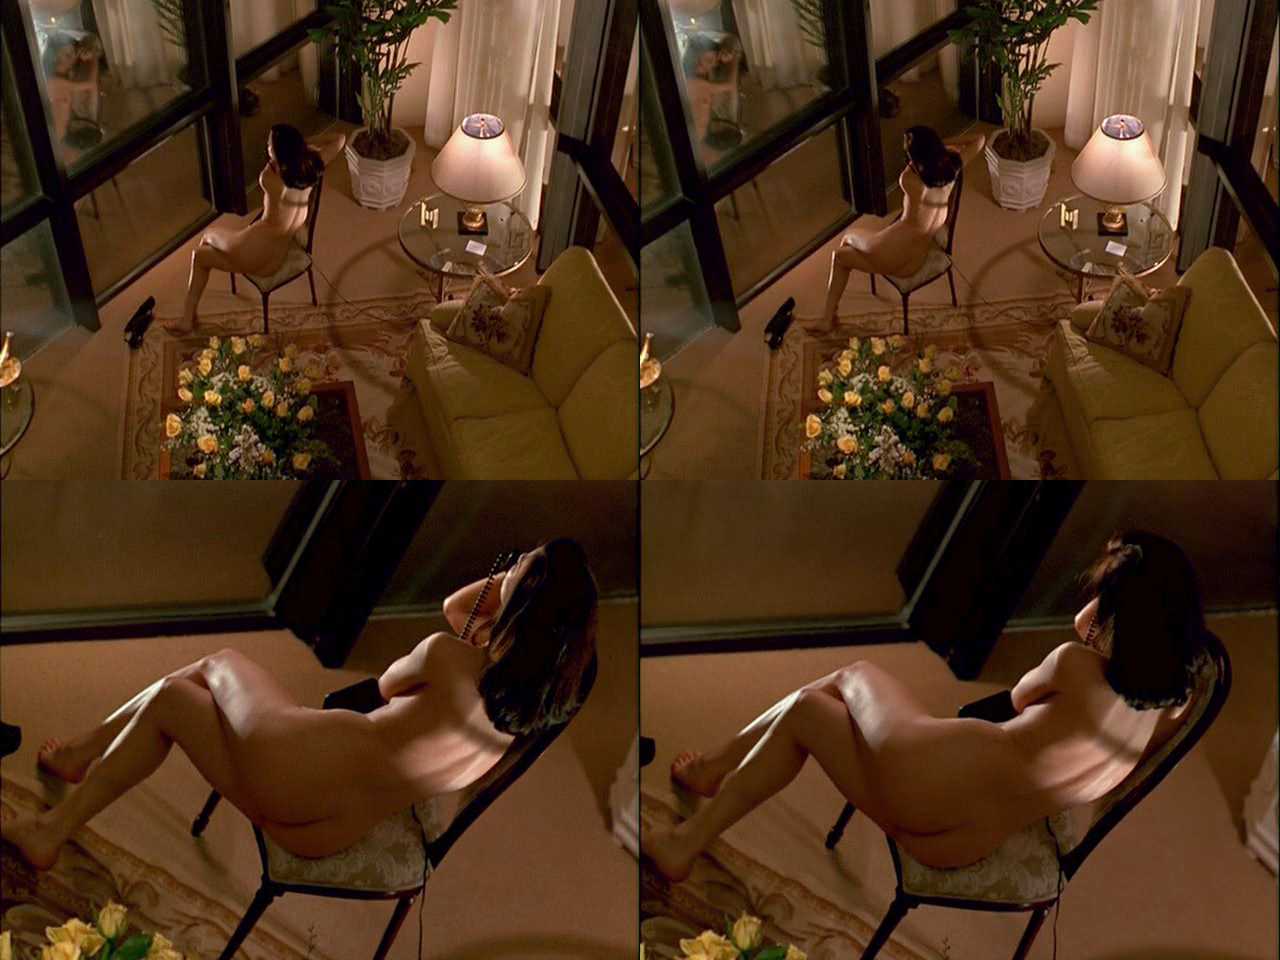 Linda fiorentino naked